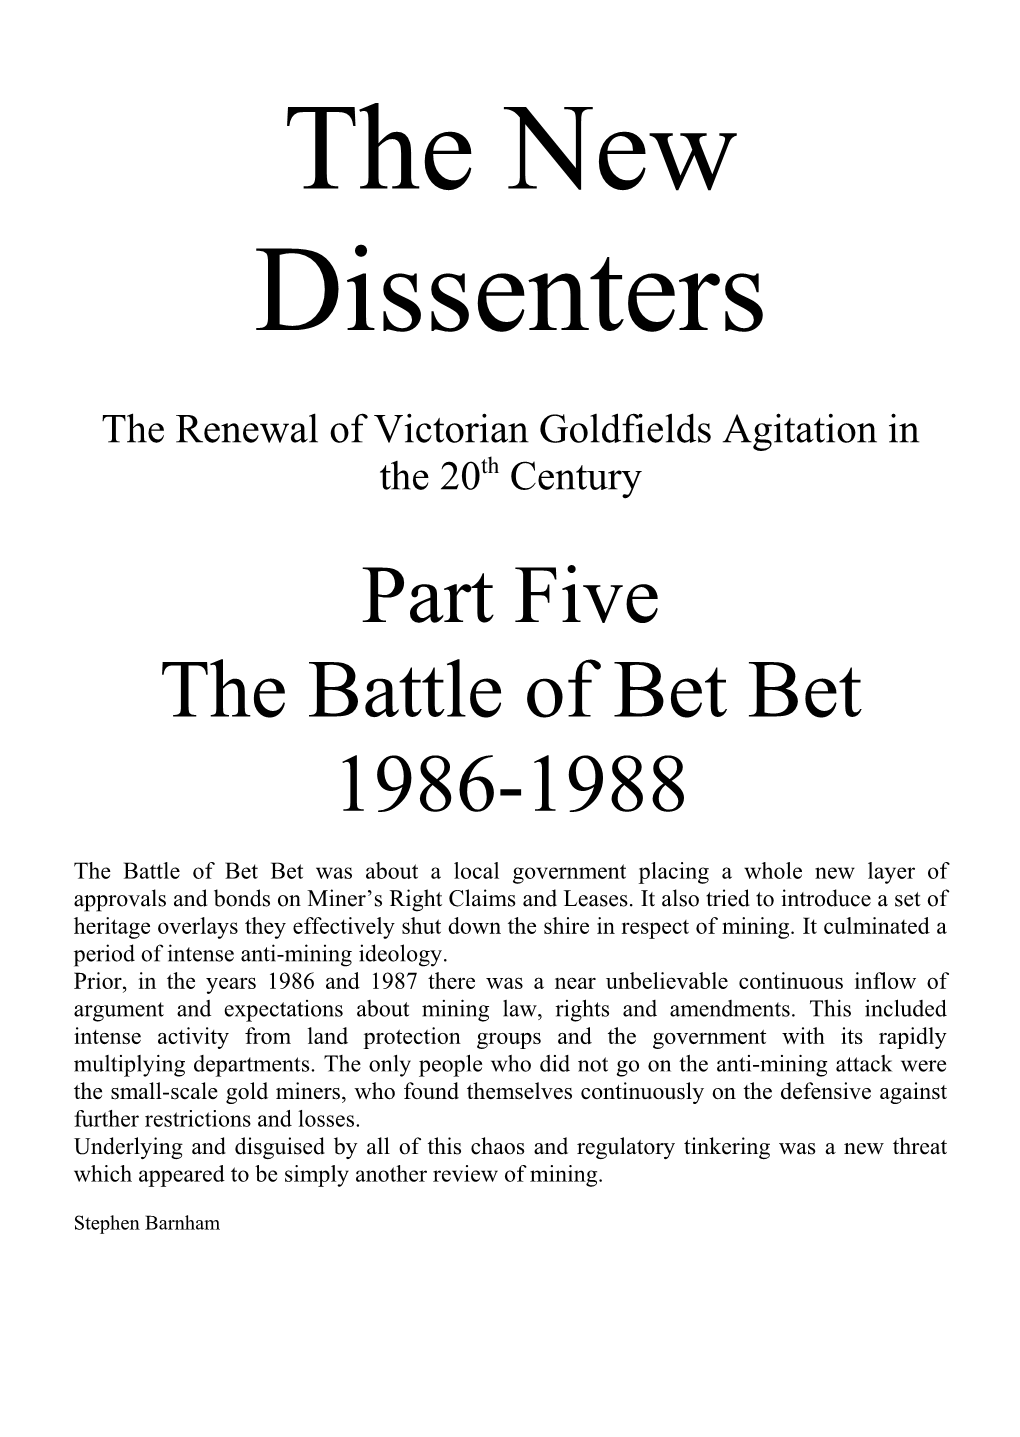 Part 5. the Battle of Bet Bet 1986-1988